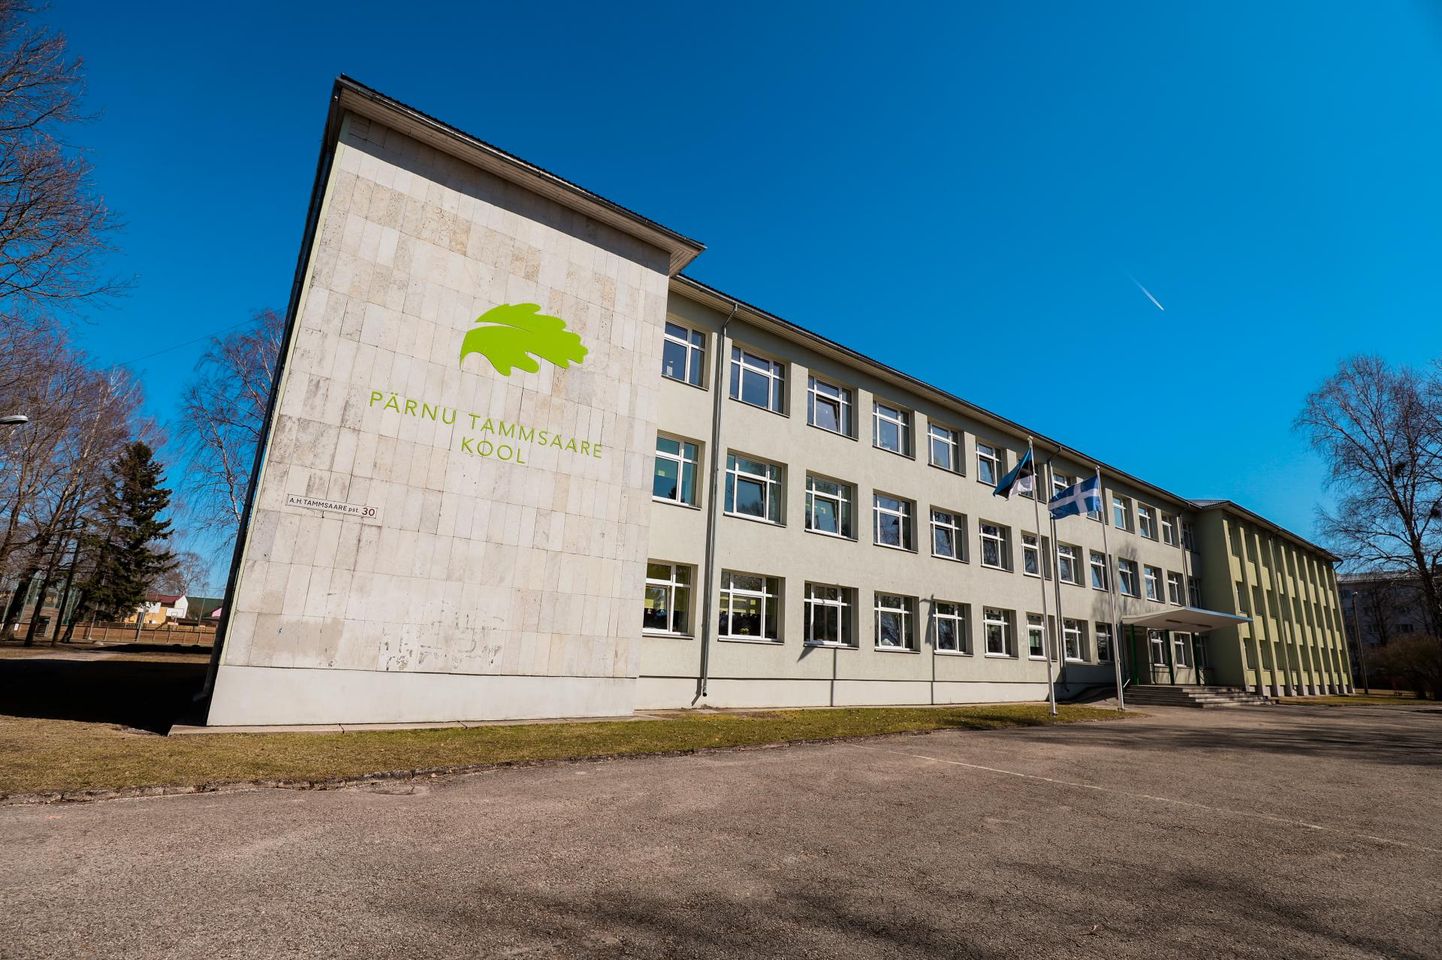 Pärnu Tammsaare kooli uuendamine maksab 2,57 miljonit eurot, millest 2,15 miljonit annab Innove, ülejäänu tasub Pärnu linnavalitsus.